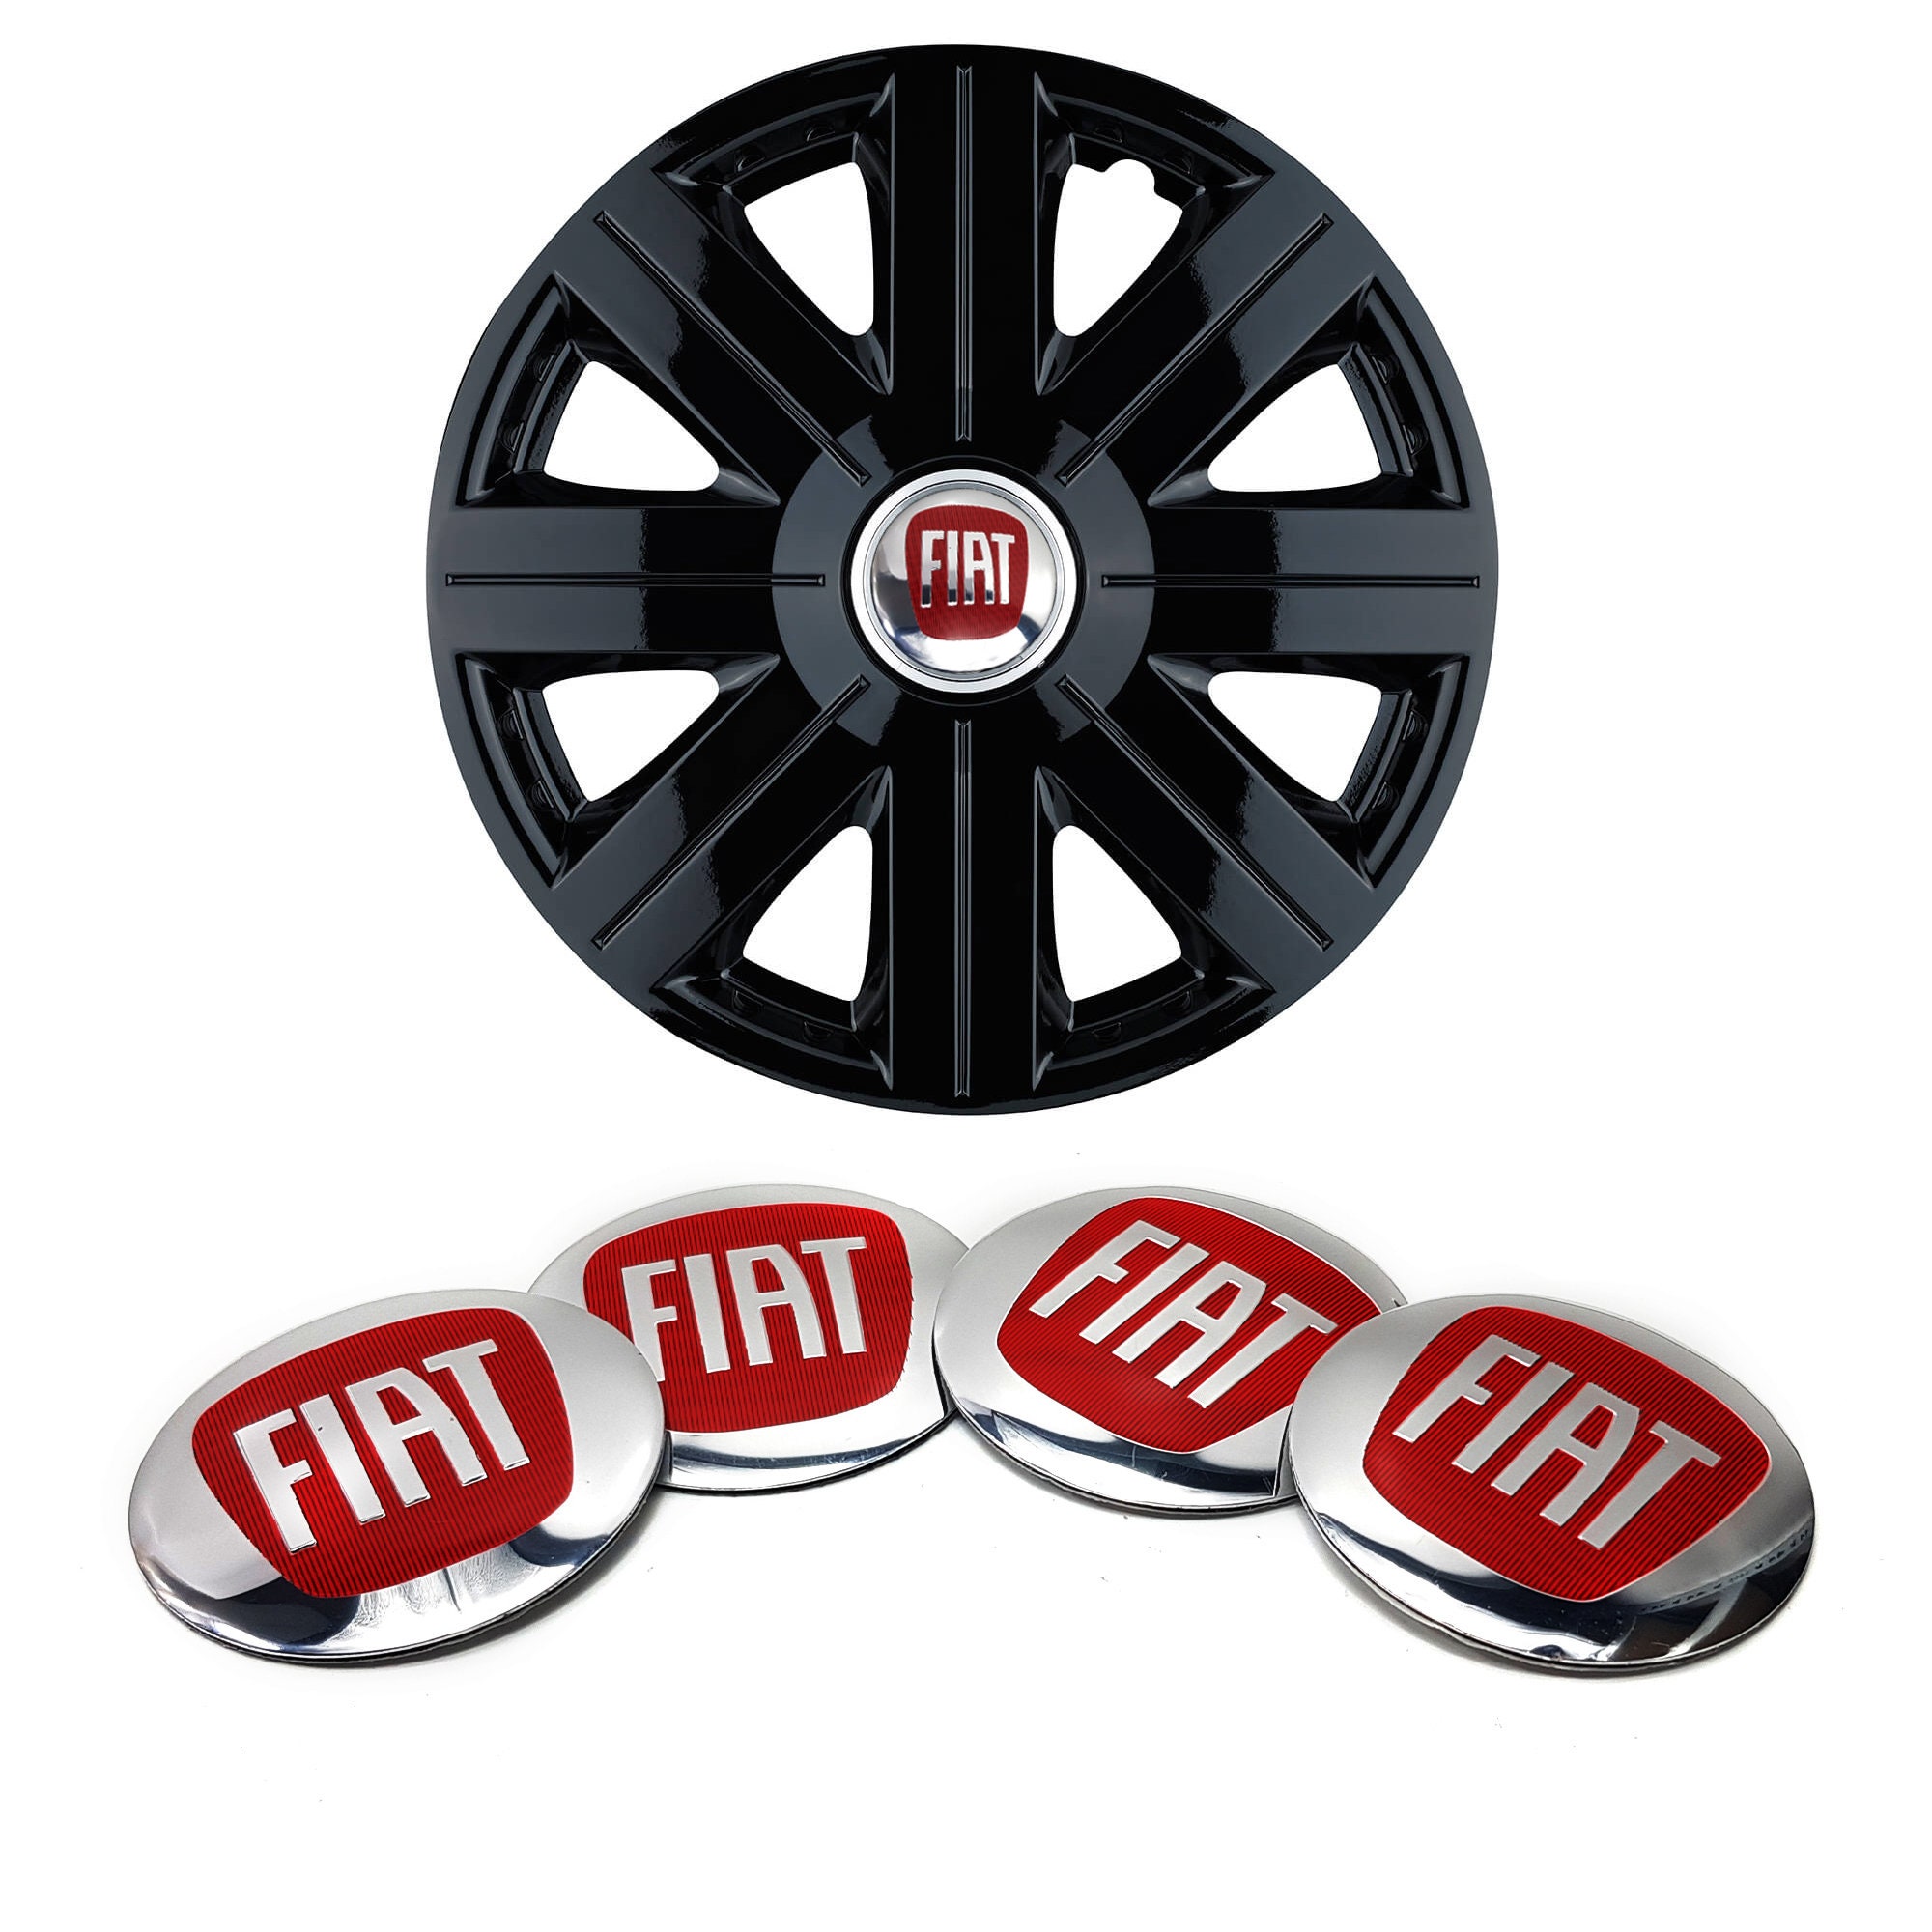 Nest volgorde Duizeligheid Fiat 500 Accessories - Etsy